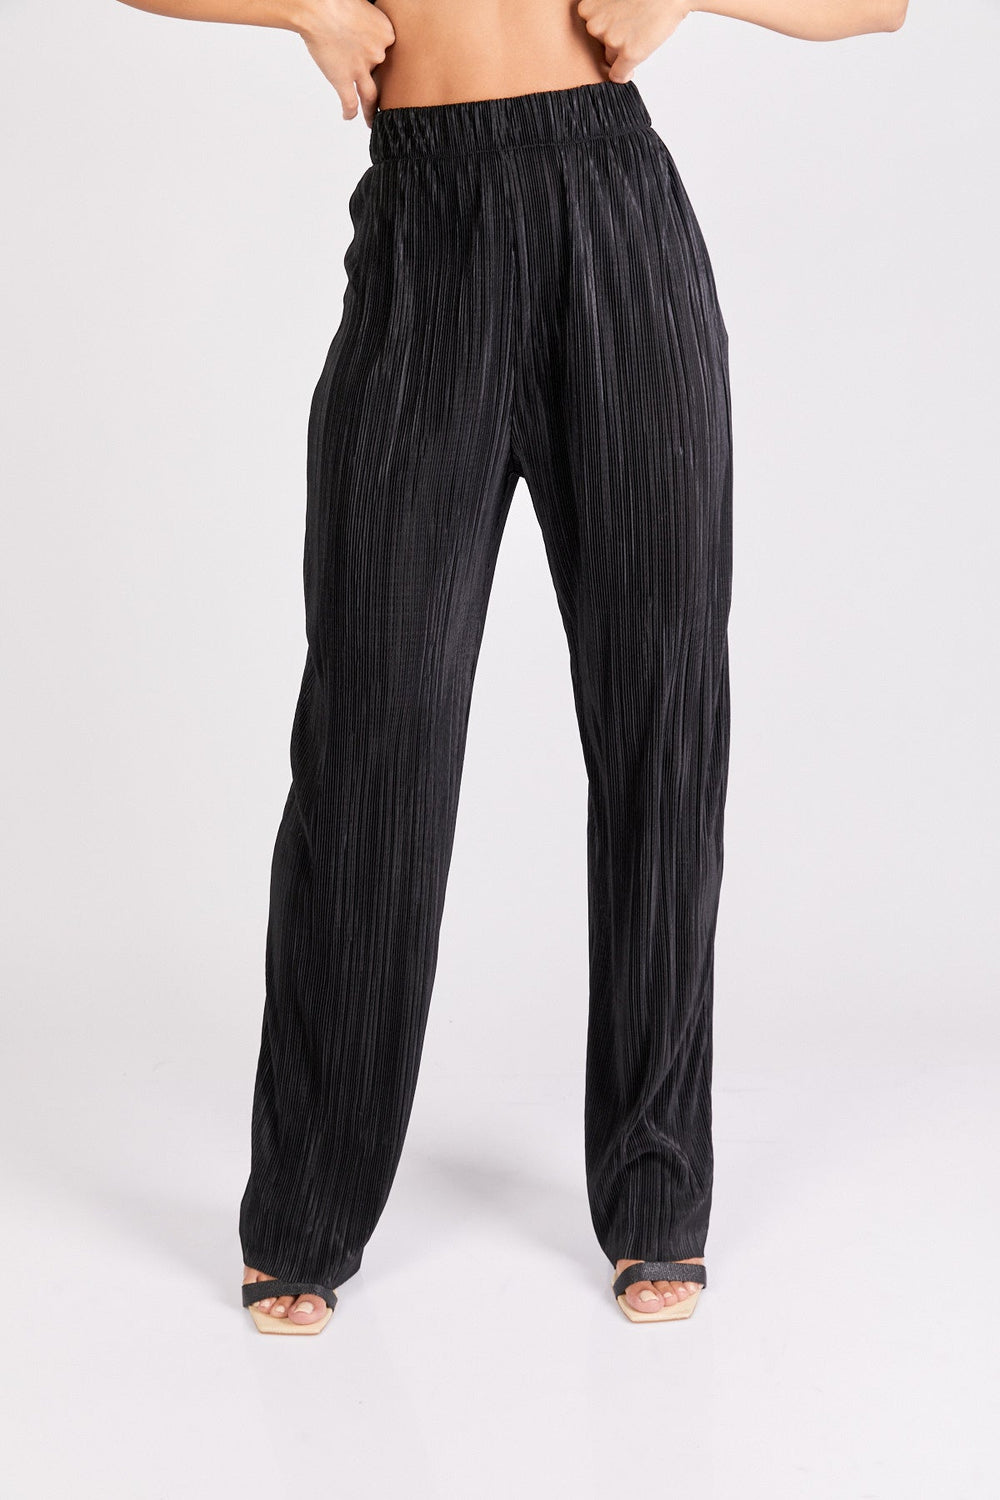 מכנסי קואצ'לה בצבע שחור לורקס - Neta Efrati